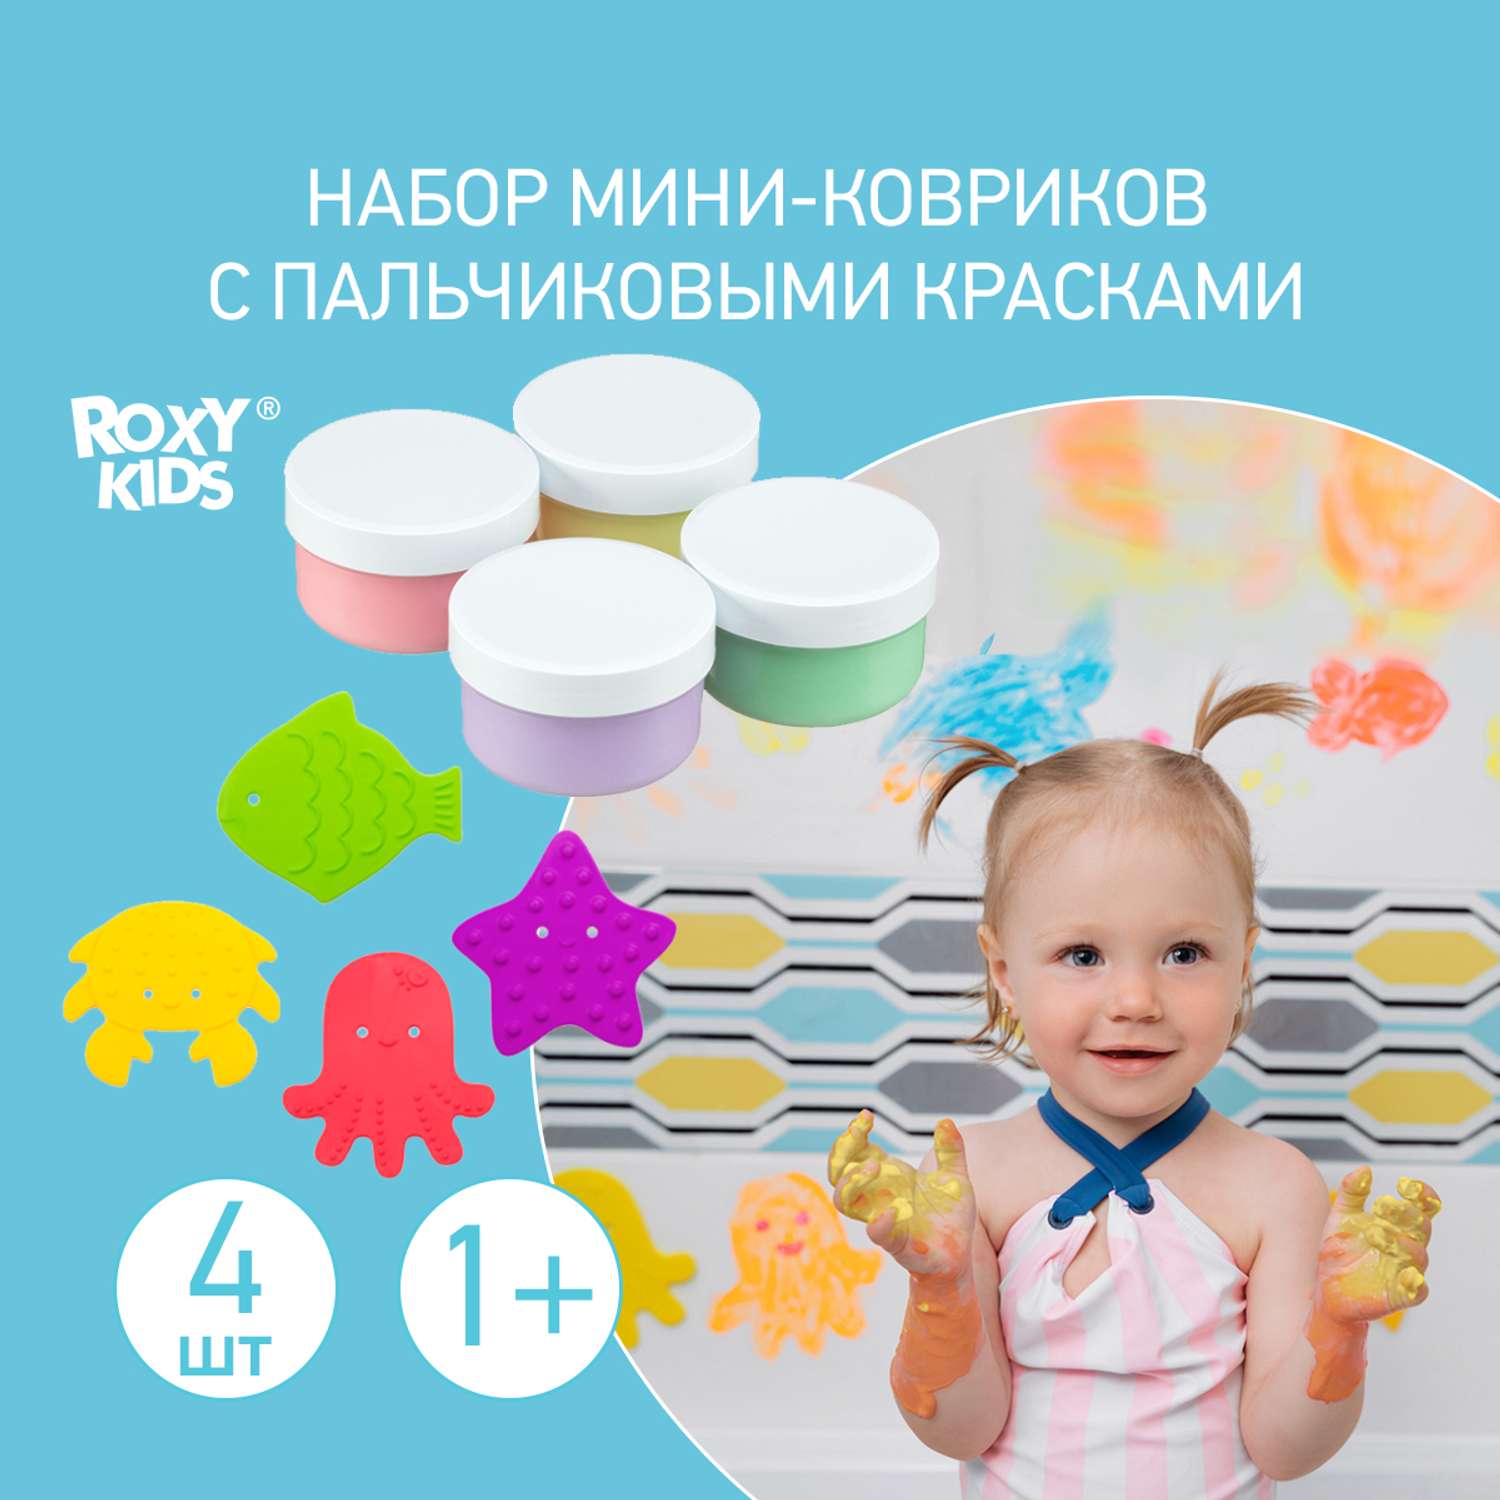 Мини-коврики детские ROXY-KIDS для ванной и пальчиковые краски 4шт х 4шт - фото 1